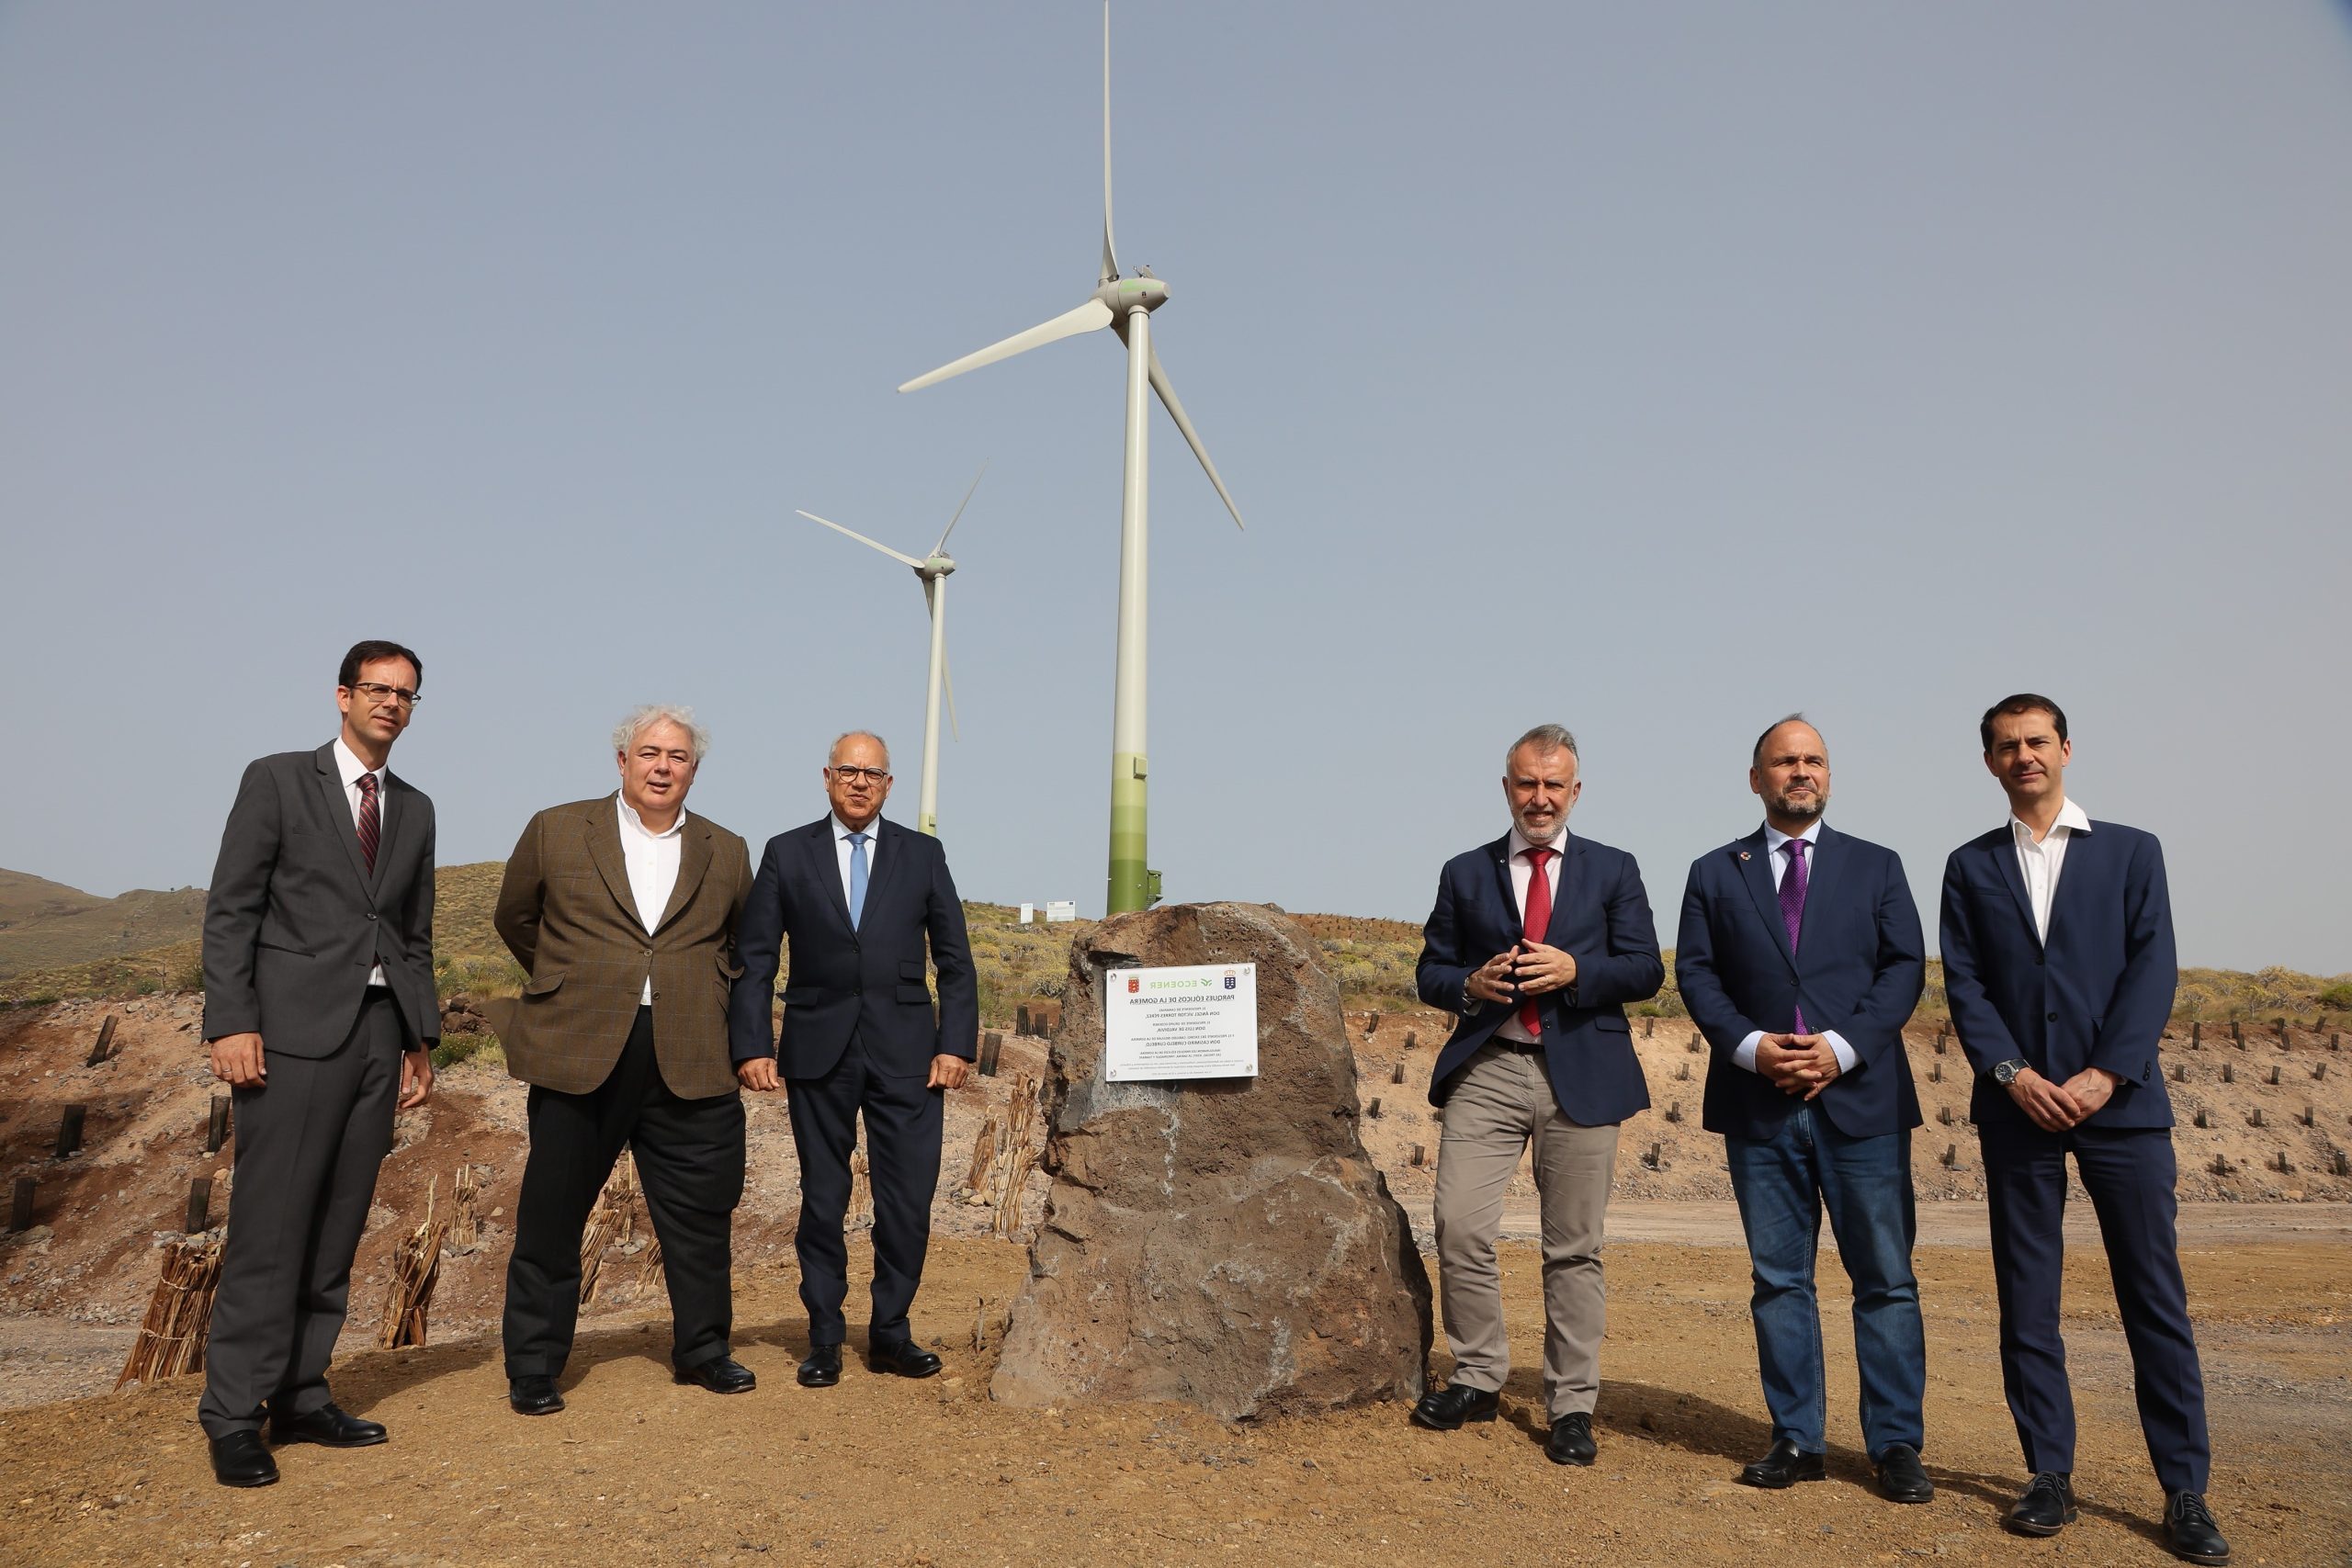 Ecoener inaugura cinco parques eólicos en La Gomera y afianza su liderazgo en energías renovables en las islas Canarias